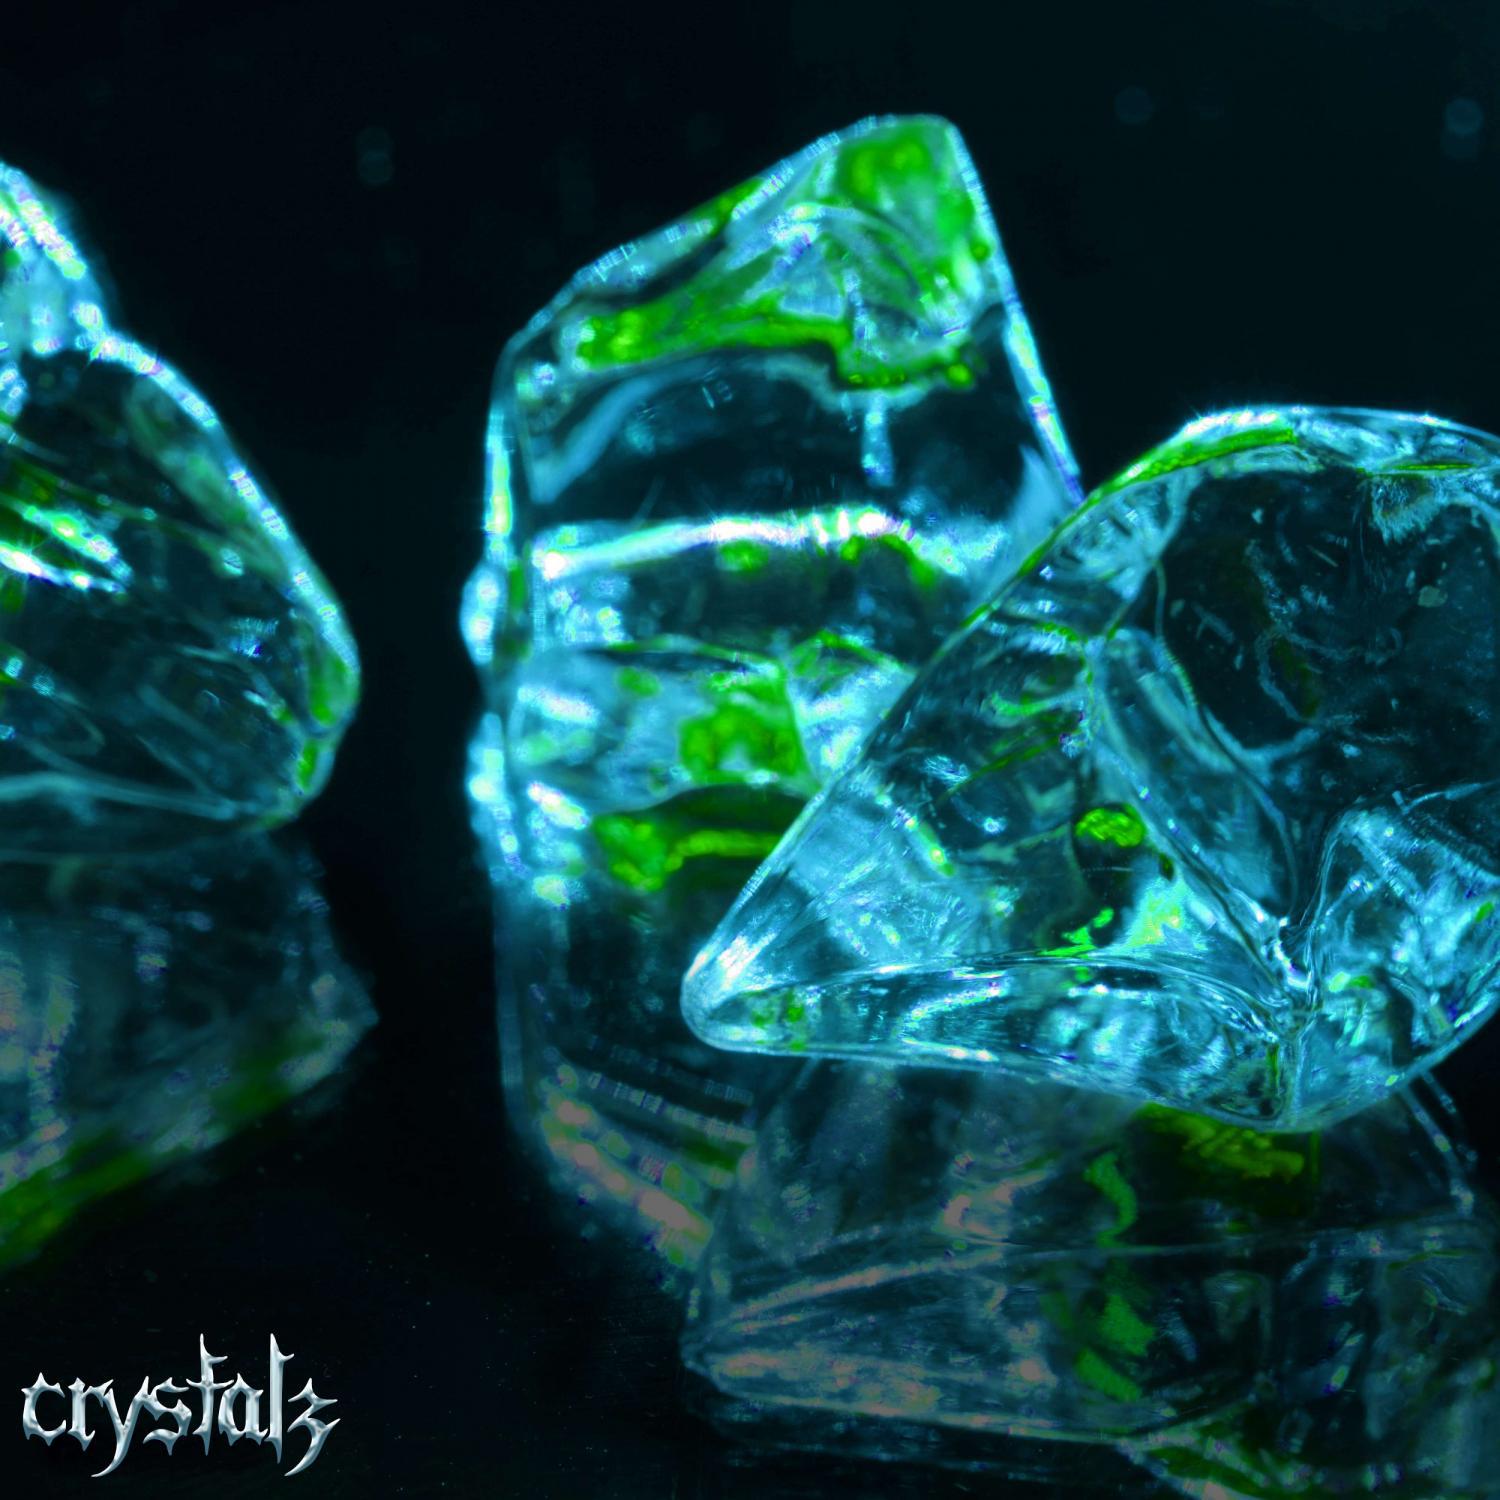 Crystals slowed pr1svx. Crystals isolate ФОНК. Crystals isolate.exe. Phonk - Crystal - isolate. Crystals pr1svx.